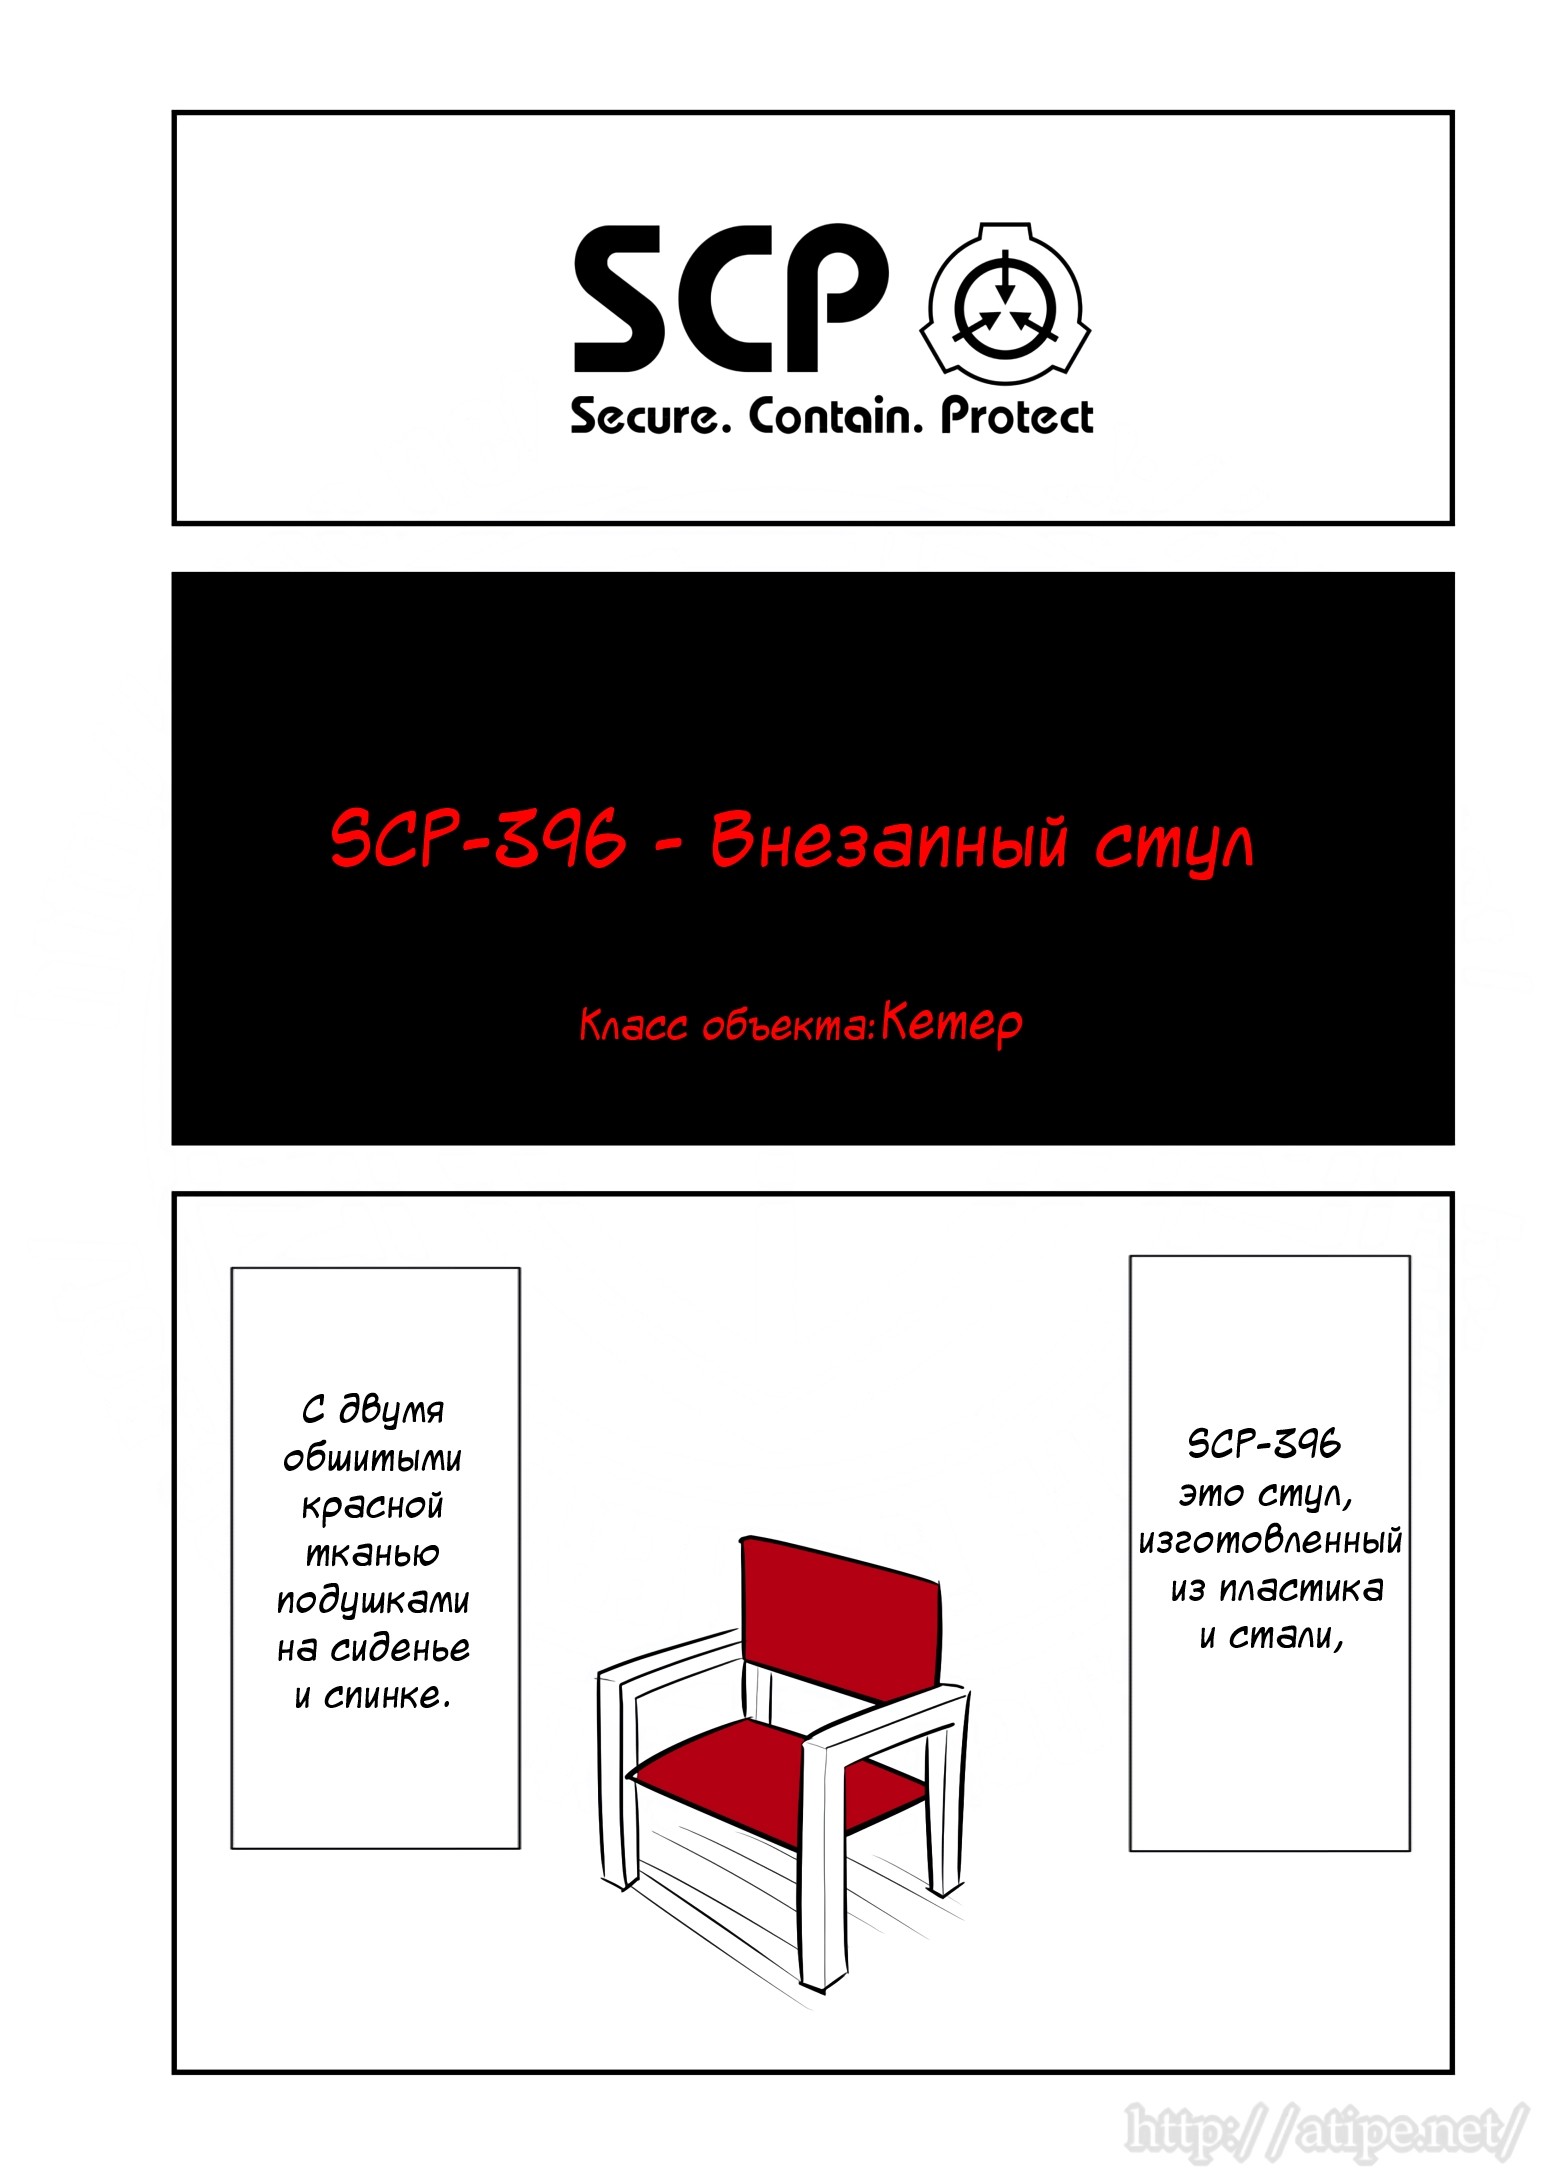 Упрощенный SCP 1 - 77 SCP-396